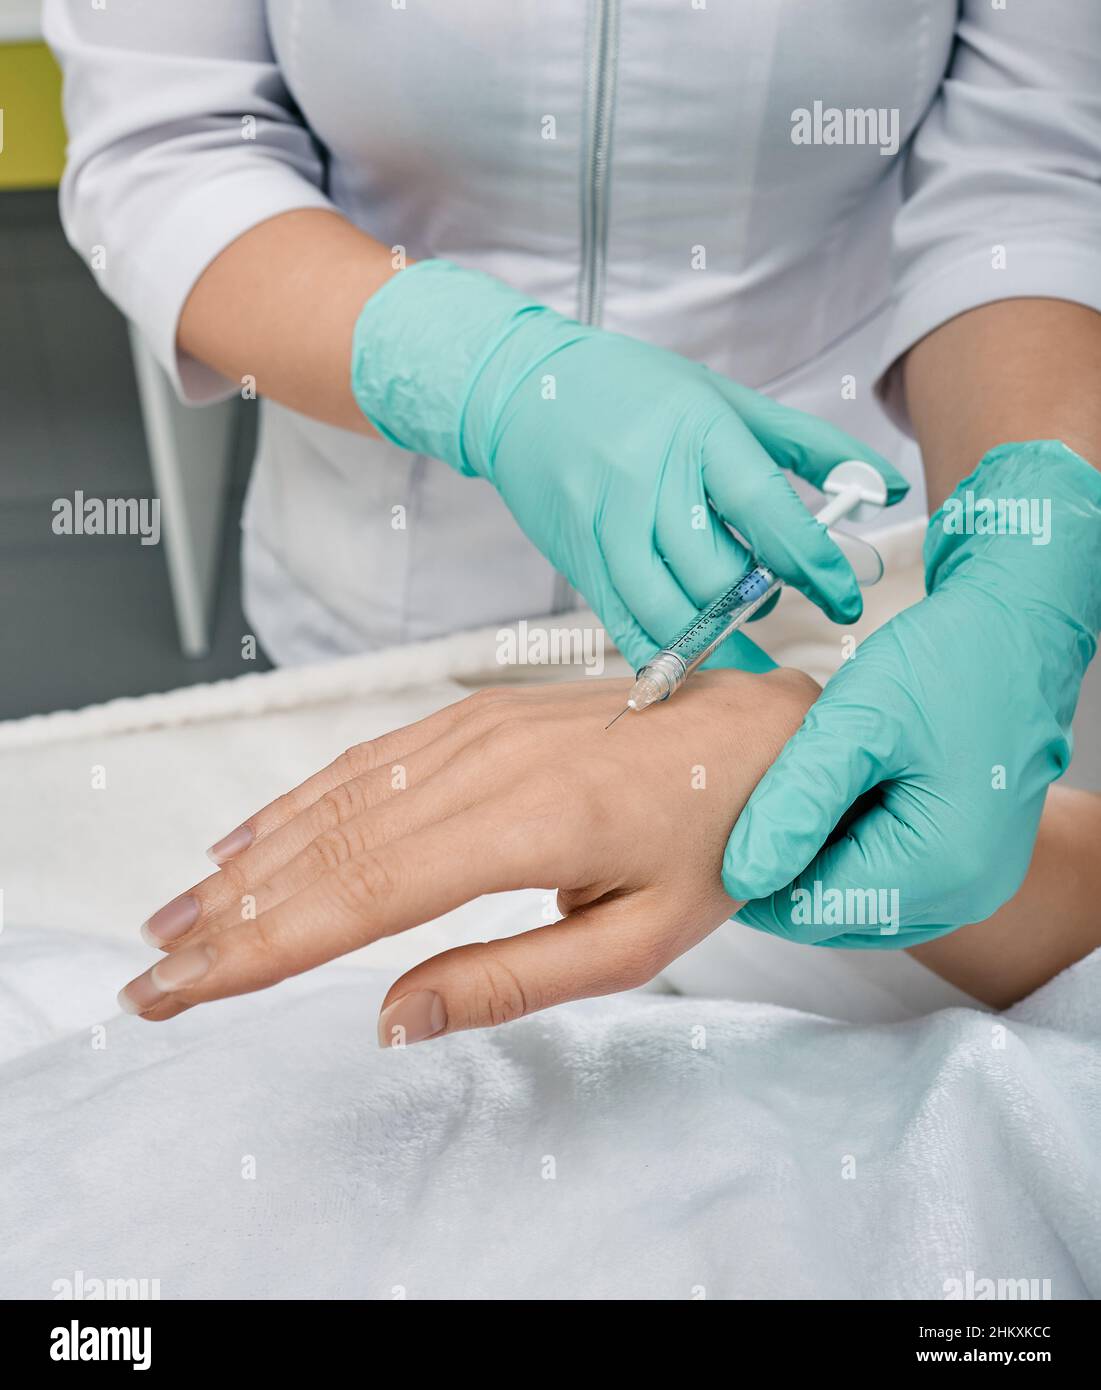 Metodi di iniezione per correggere i segni di invecchiamento delle mani per le pazienti di sesso femminile presso la clinica di cosmetologia. Ringiovanimento delle mani con acido ialuronico, biorevital Foto Stock